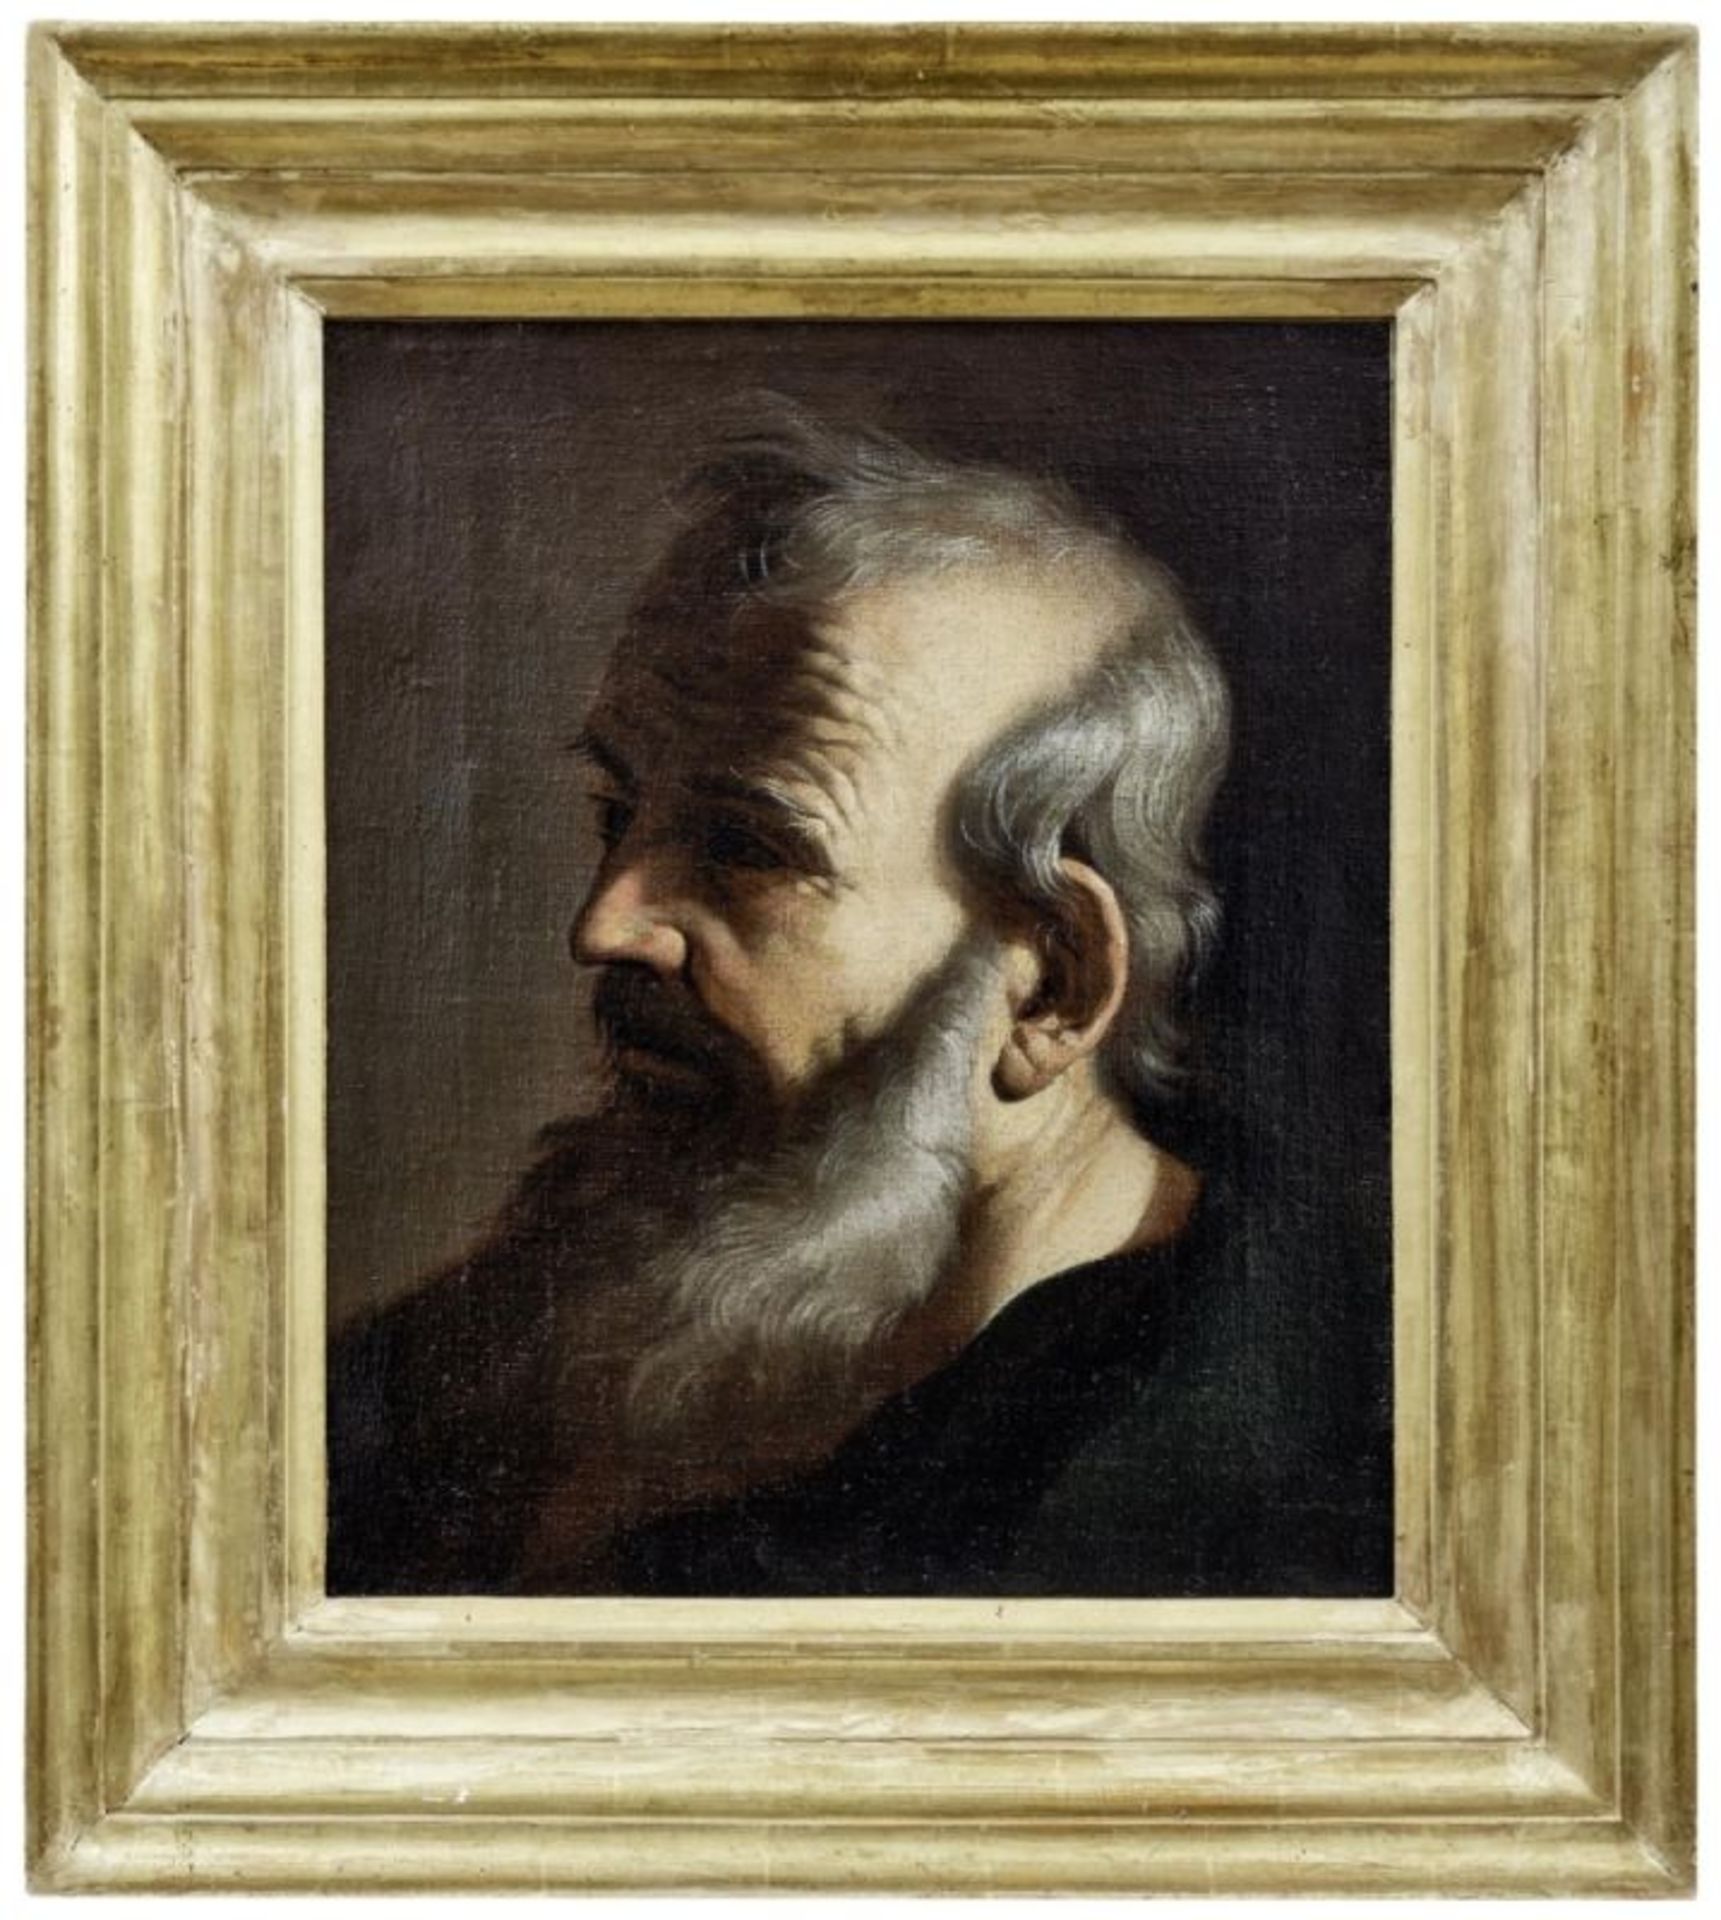 Büste eines bärtigen Mannes, Neapolitanischer Maler, 2. H. 17. Jh.